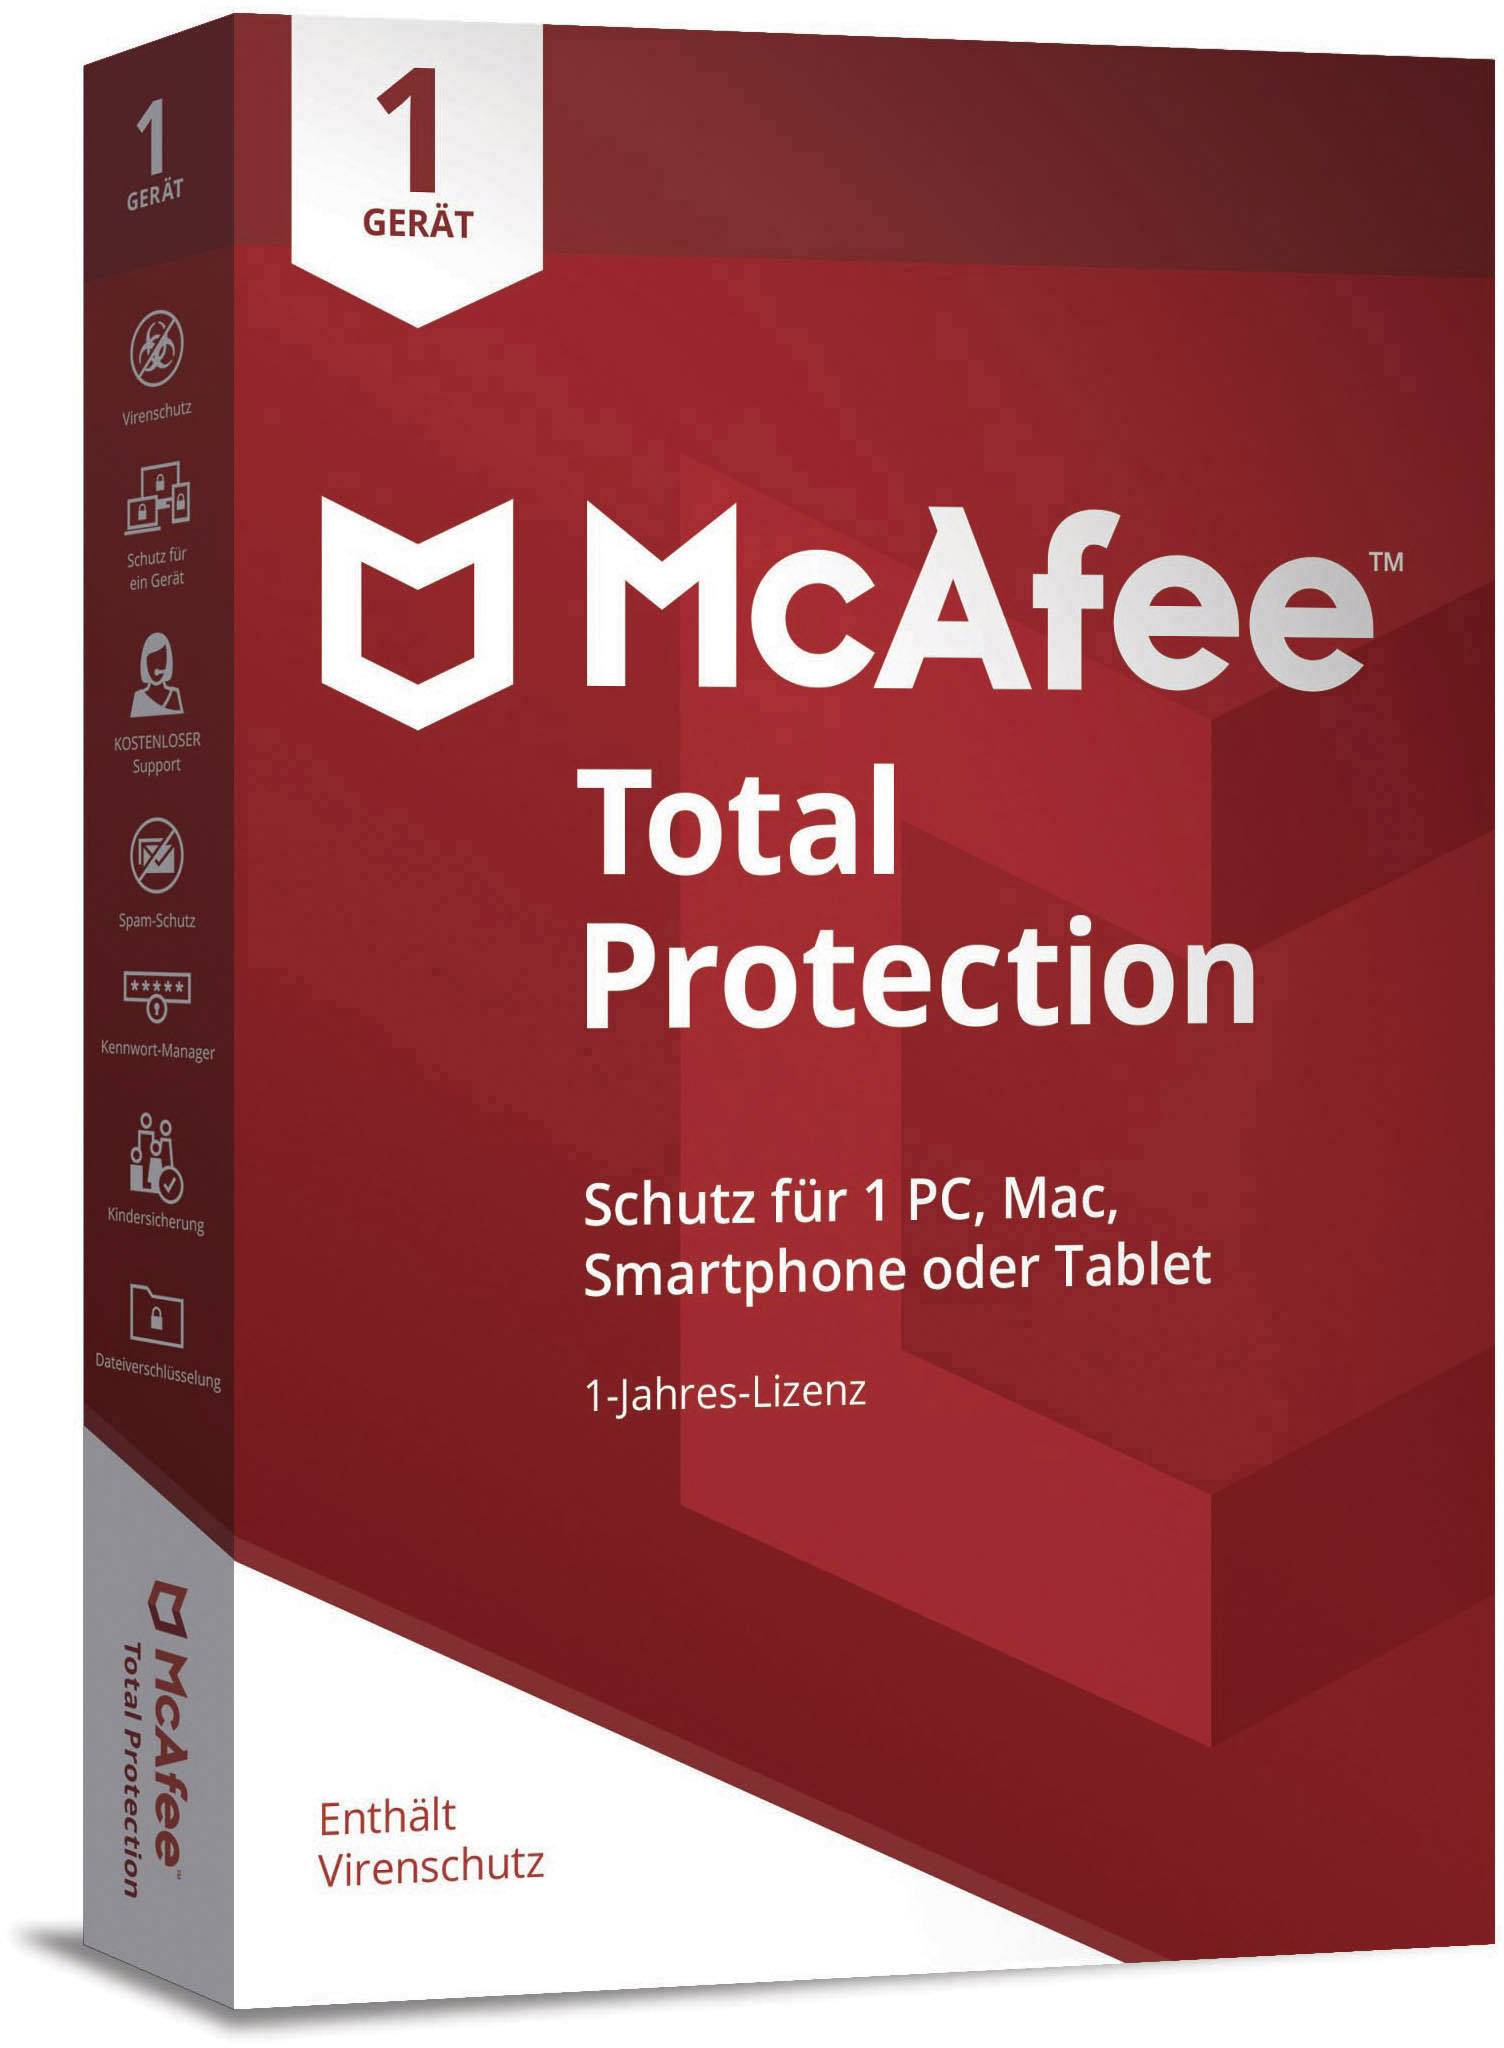 mcfee antivirus for mac